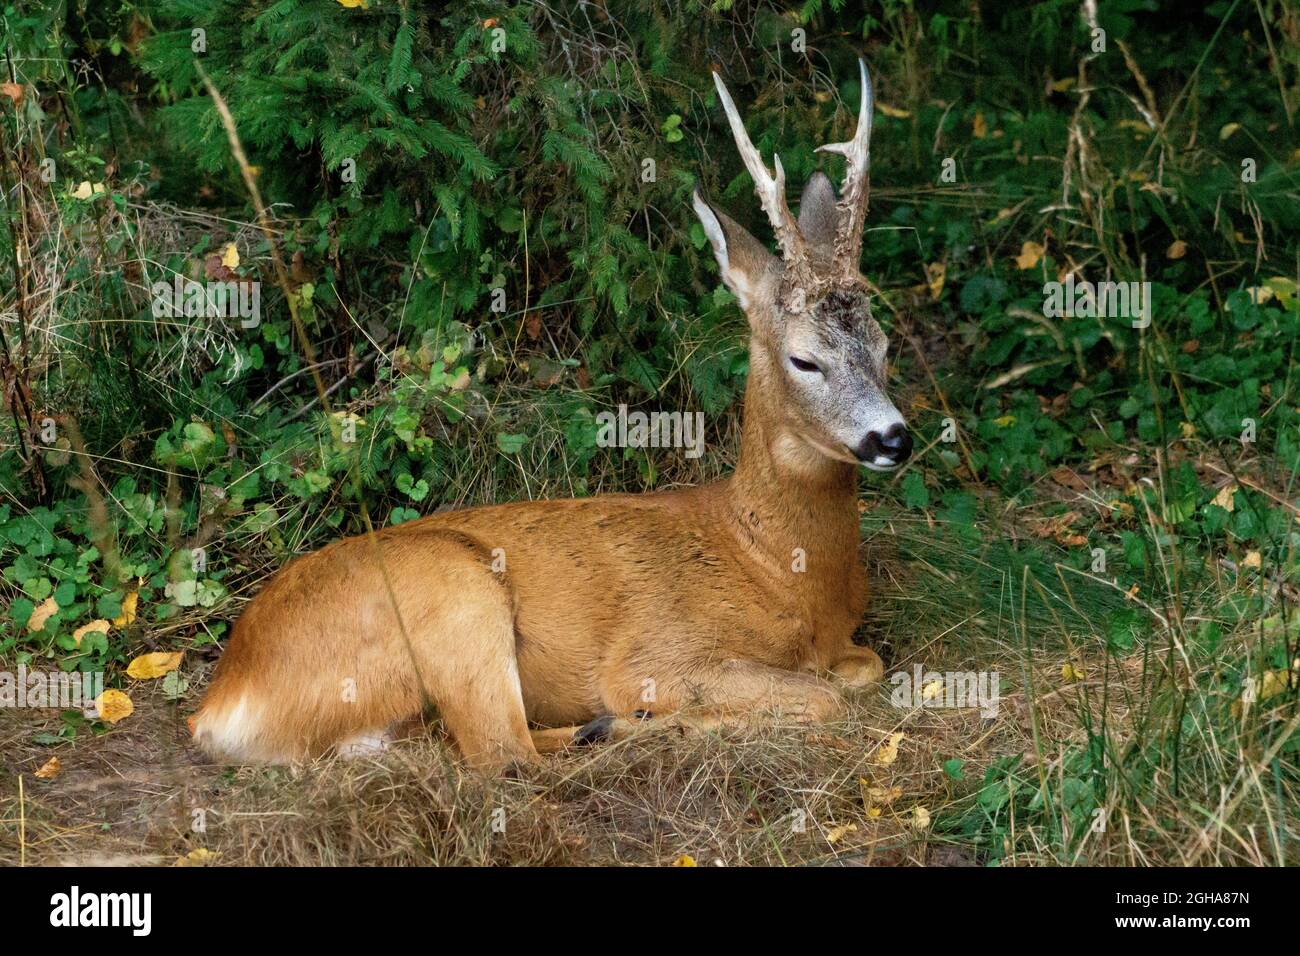 Giovane cervi bruno che riposa sull'erba dello zoo Foto Stock